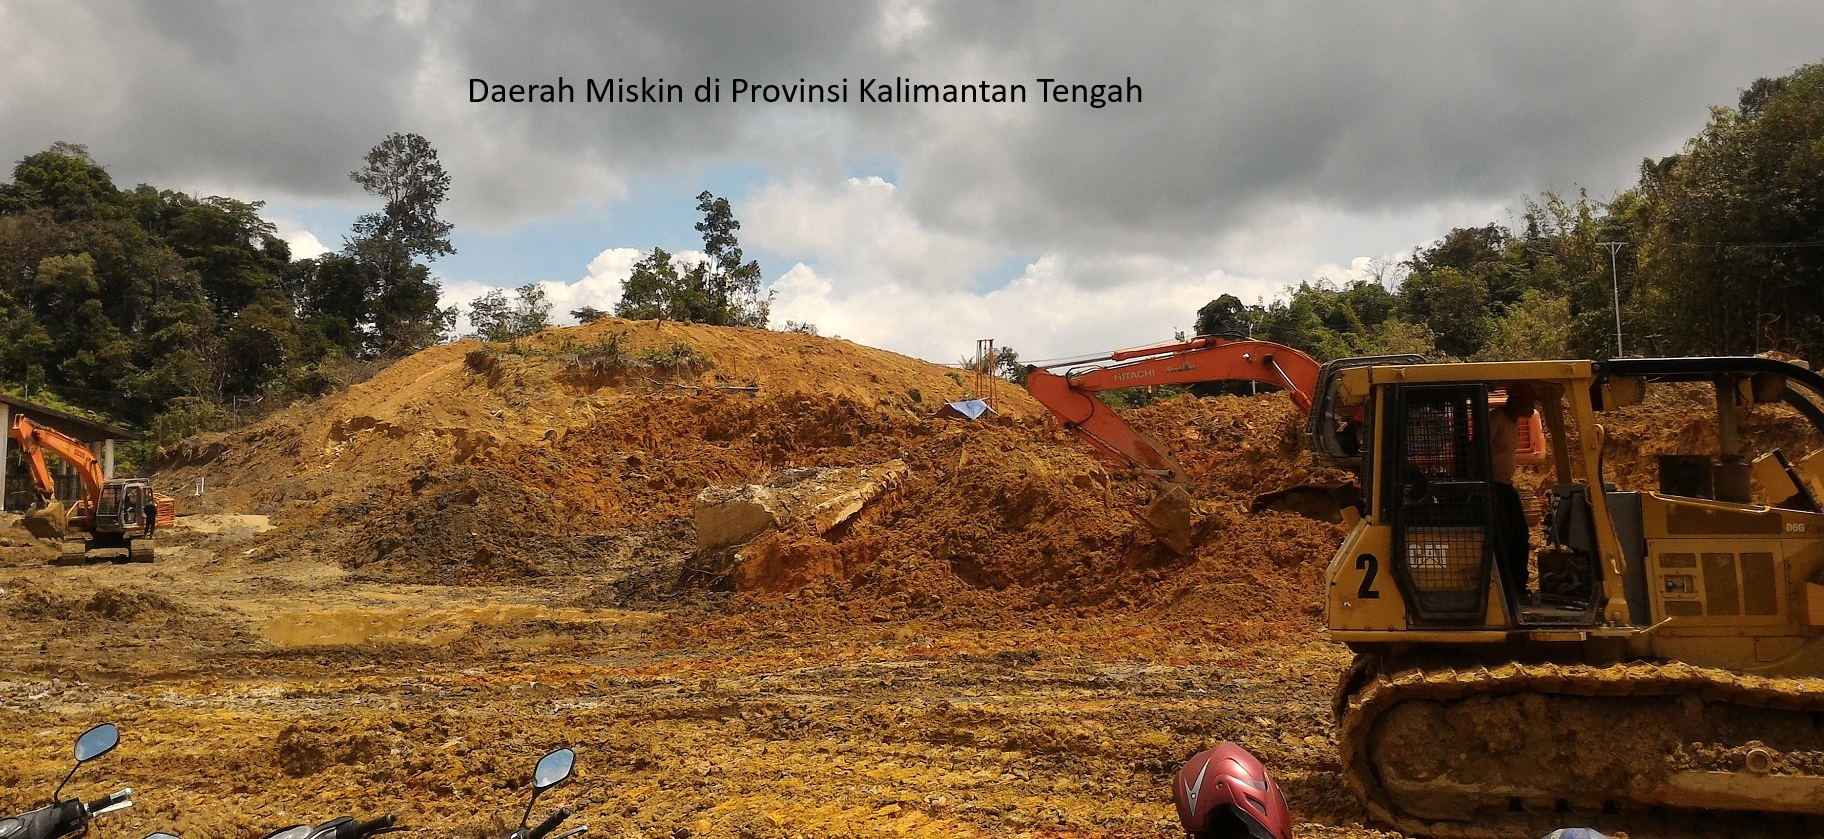 Tantangan Kemiskinan di Provinsi Kalimantan Tengah: Analisis Mendalam 4 Daerah Penduduk Miskin Terbanyak